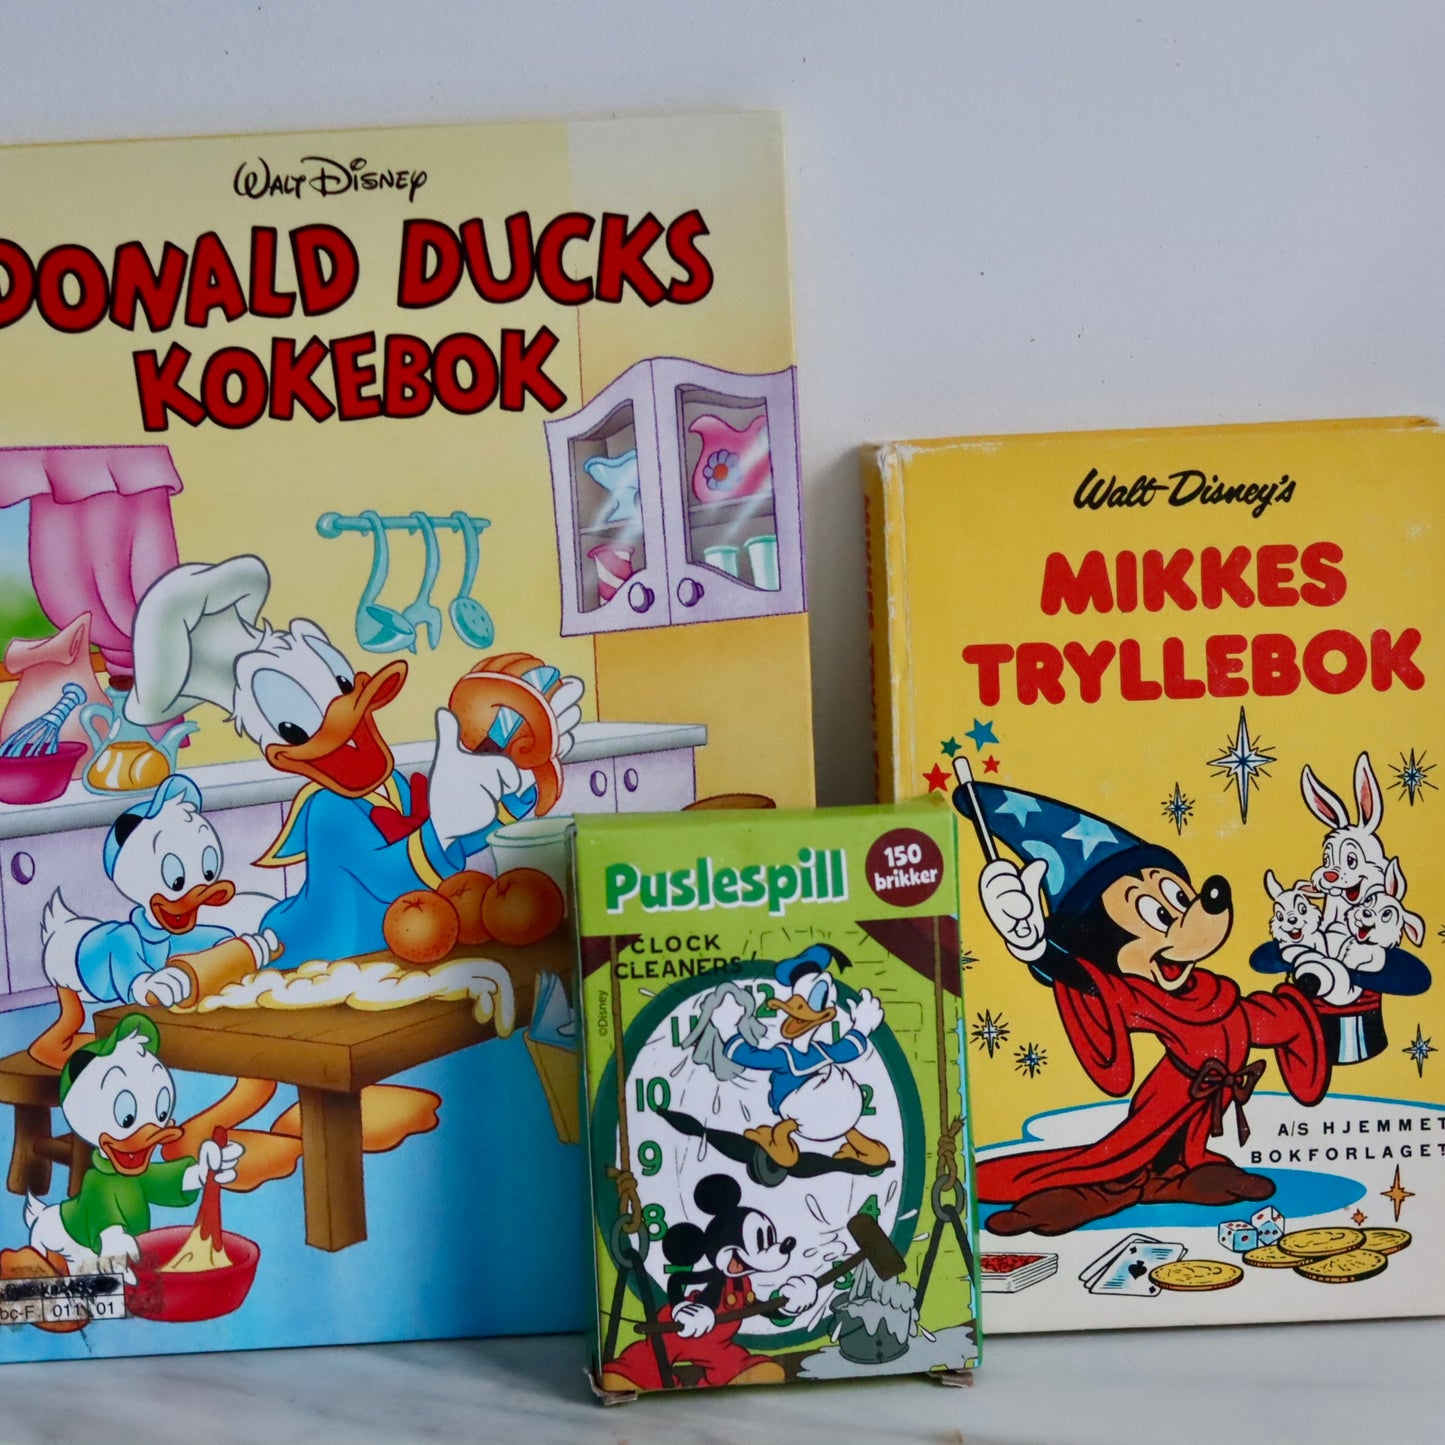 Donald Duck - kokebok, tryllebok, puslespill og kopp